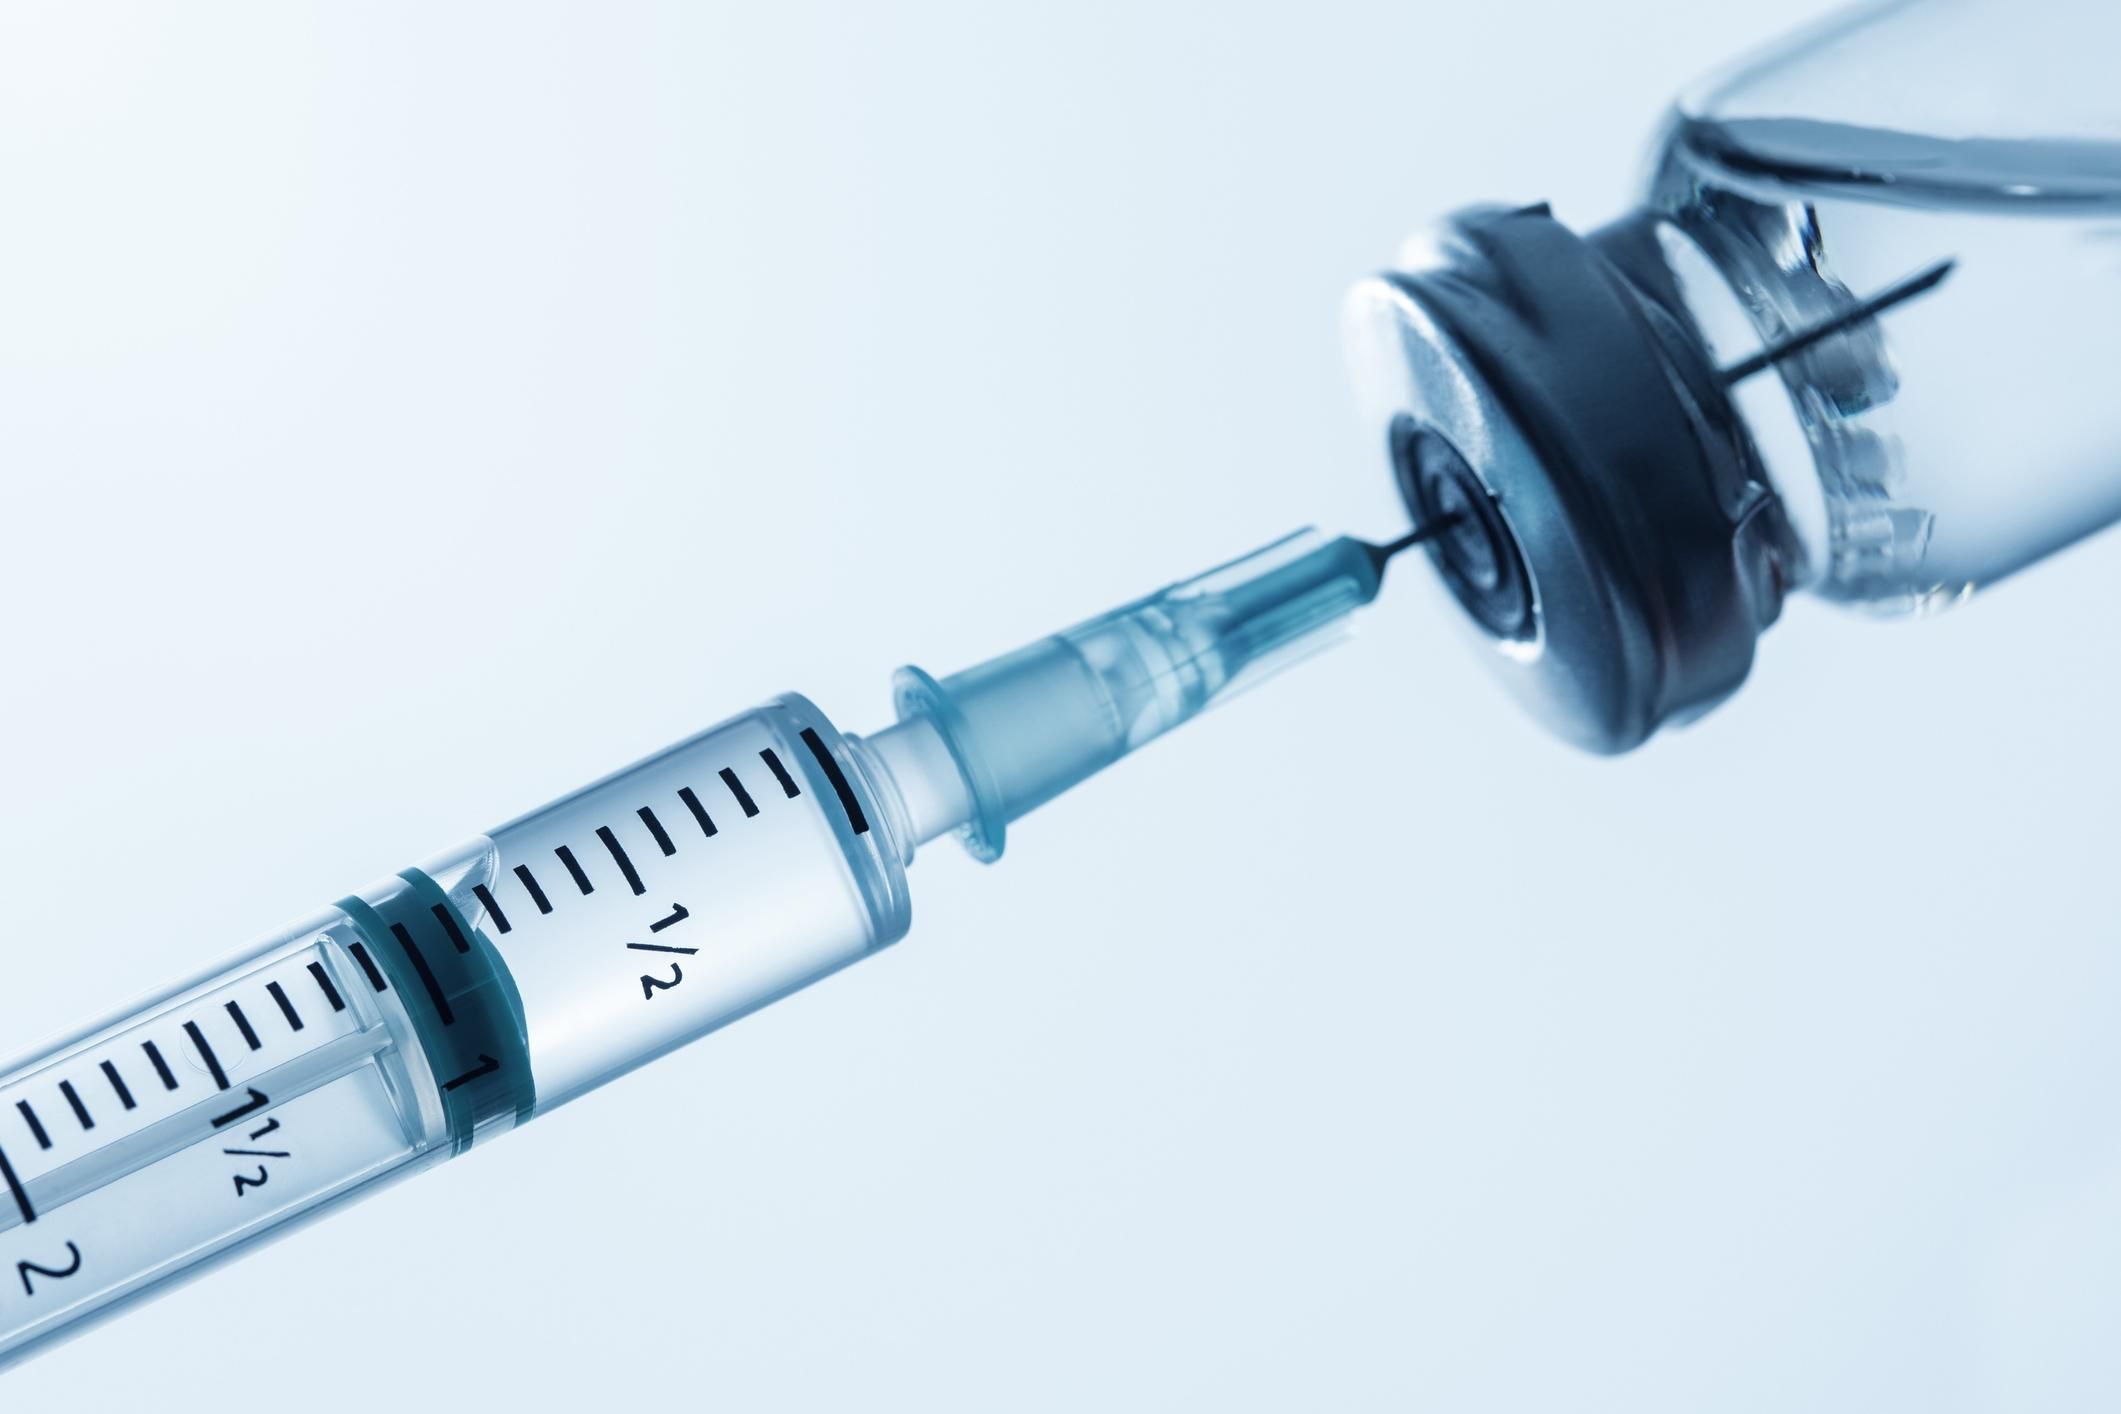 Експерти попереджають, що дефіцит шприців може зірвати програму вакцинування проти COVID-19